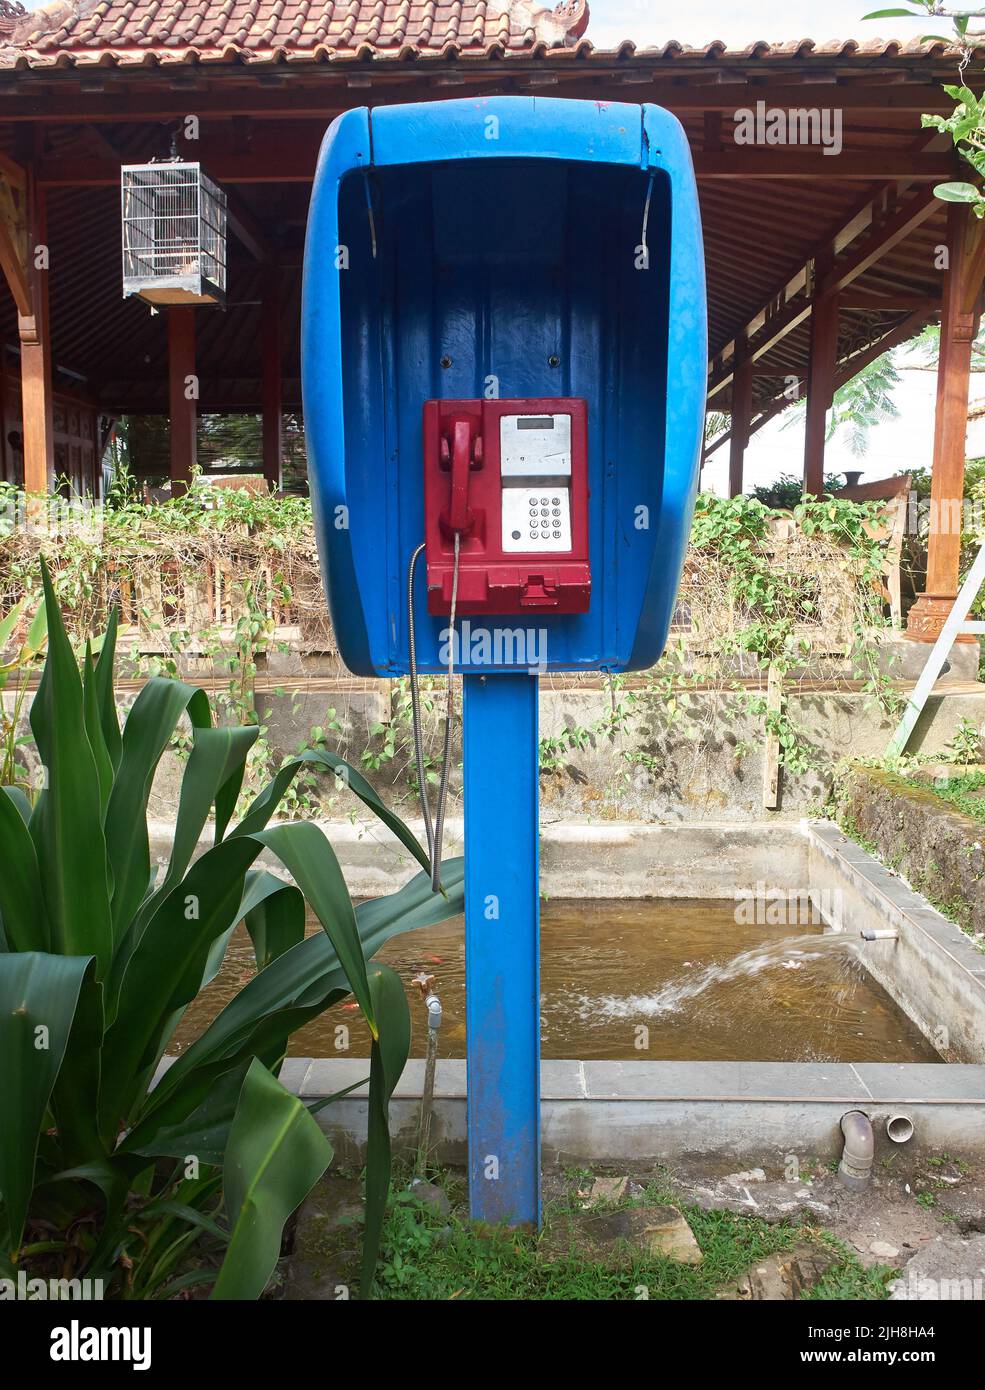 La vista frontal de los teléfonos públicos con tarjeta de Indonesia, que eran populares en la década de 90s, ahora muestran antigüedades Foto de stock